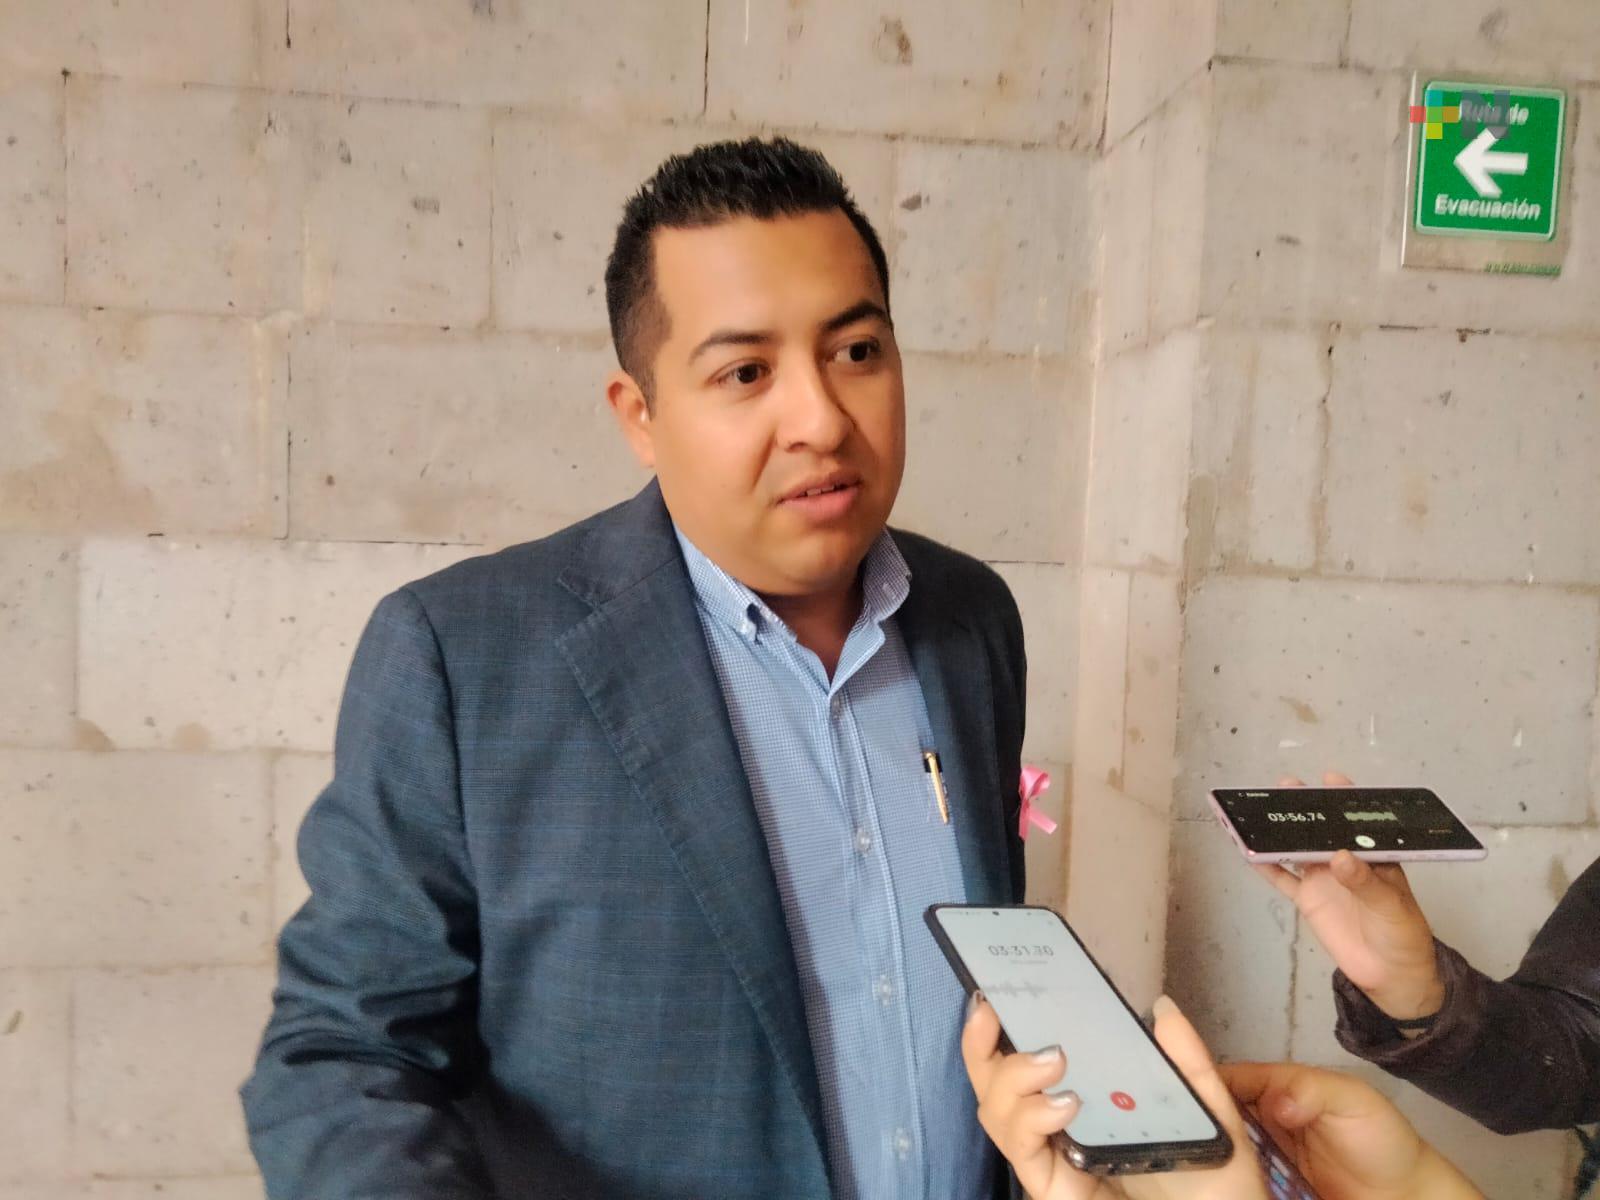 No hay permisos vigentes para explotación de piedra en Coatepec: Sedema